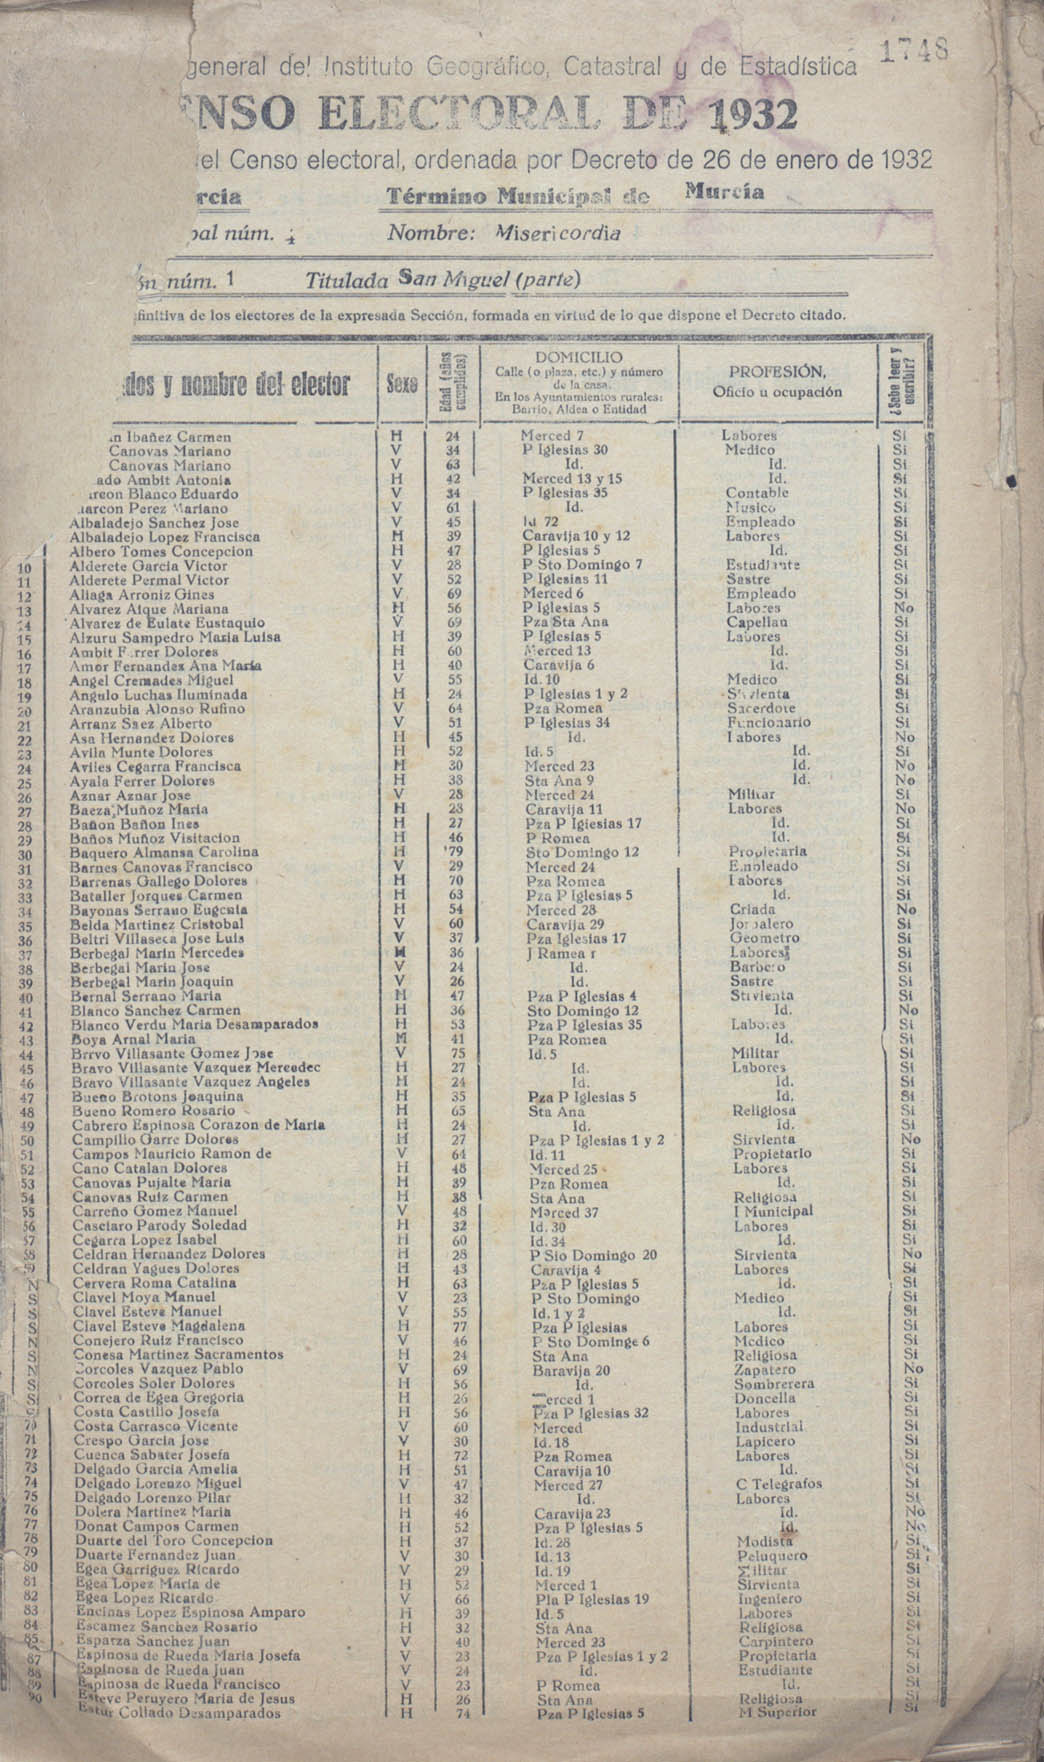 Censo electoral provincial de 1932. Listas definitivas de Murcia, formadas en virtud del Decreto de 26 de enero de 1932.